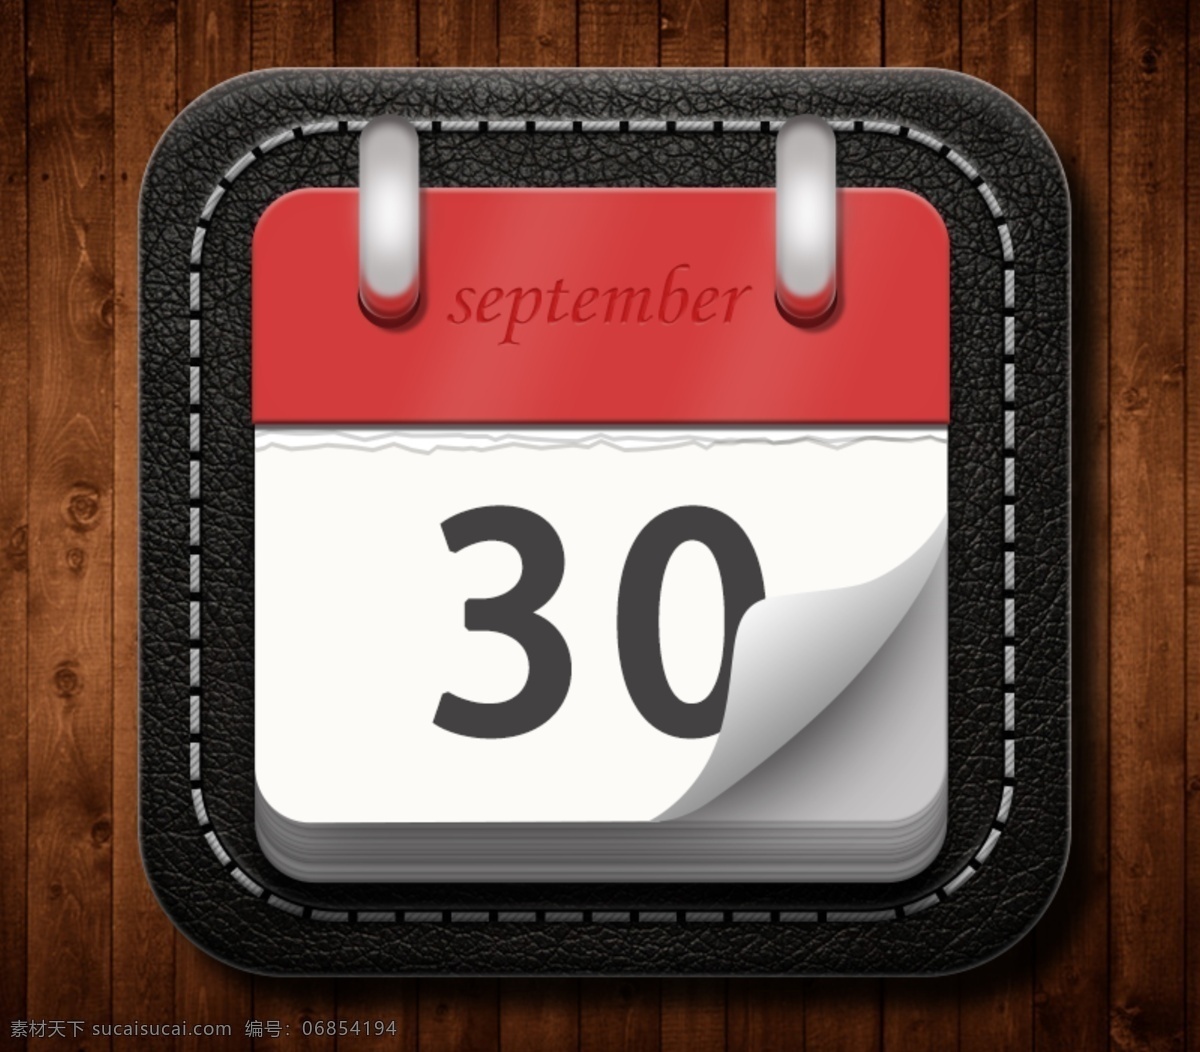 日历图标 日历 app图标 复古 明 暗 关系 运用 立体感 黑色